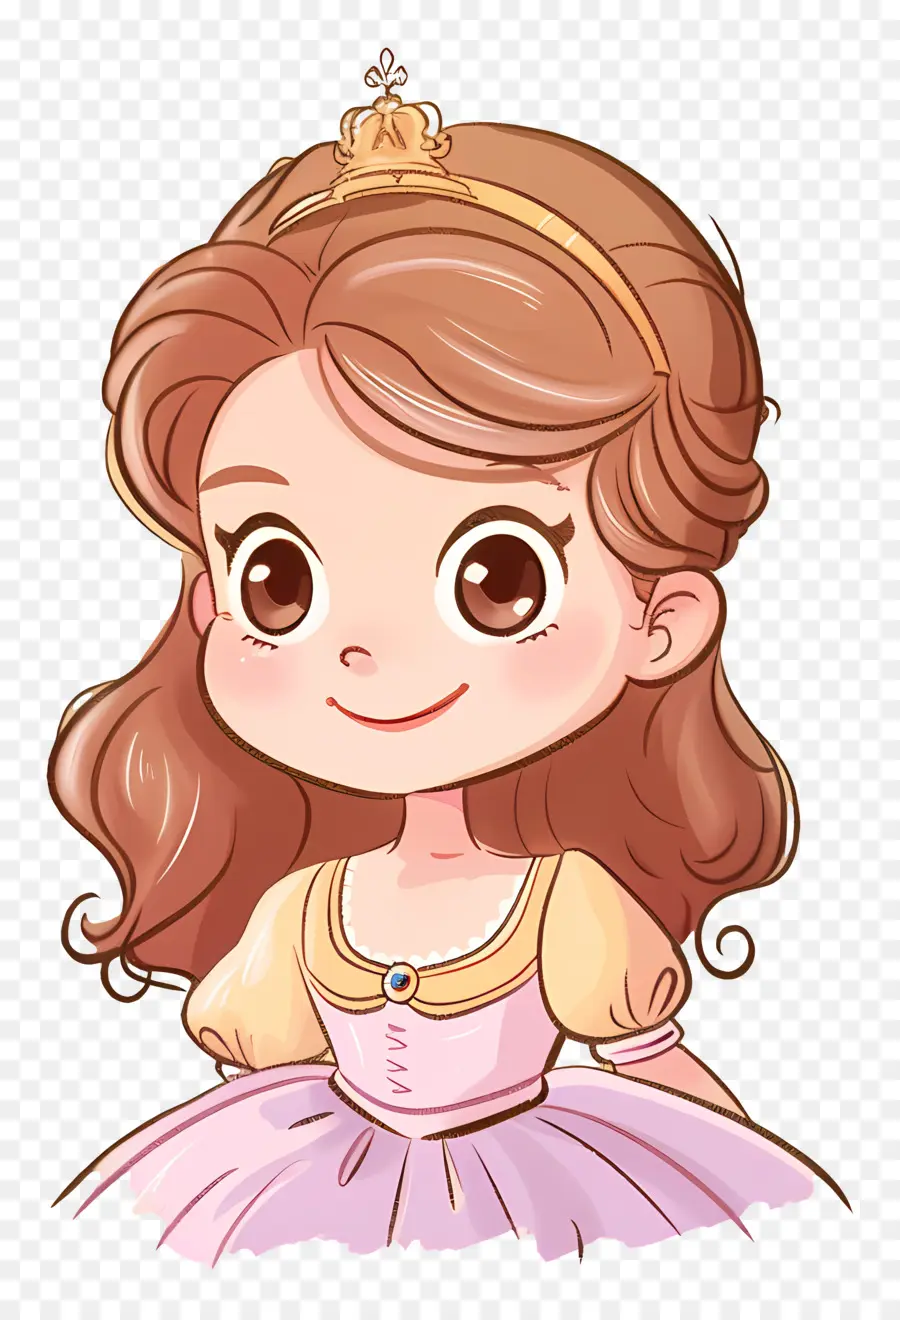 Principessa Sofia Princess Cartoon Abito bianco per capelli lunghi - Illustrazione dei cartoni animati della principessa sorridente in abito